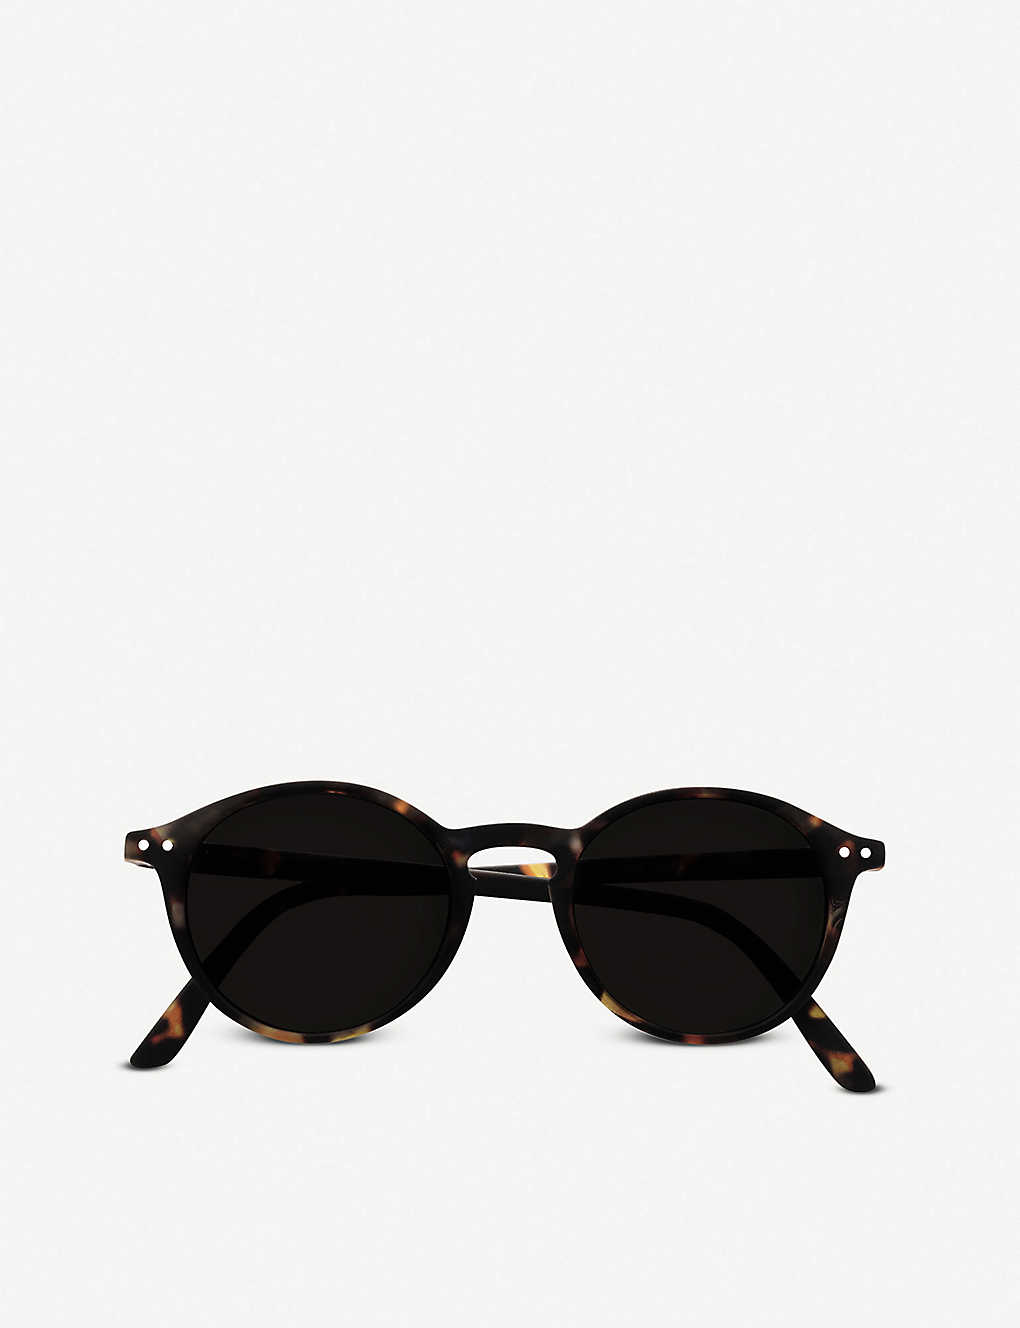 Izipizi Womens Black Sun #d Sunglasses +2.00